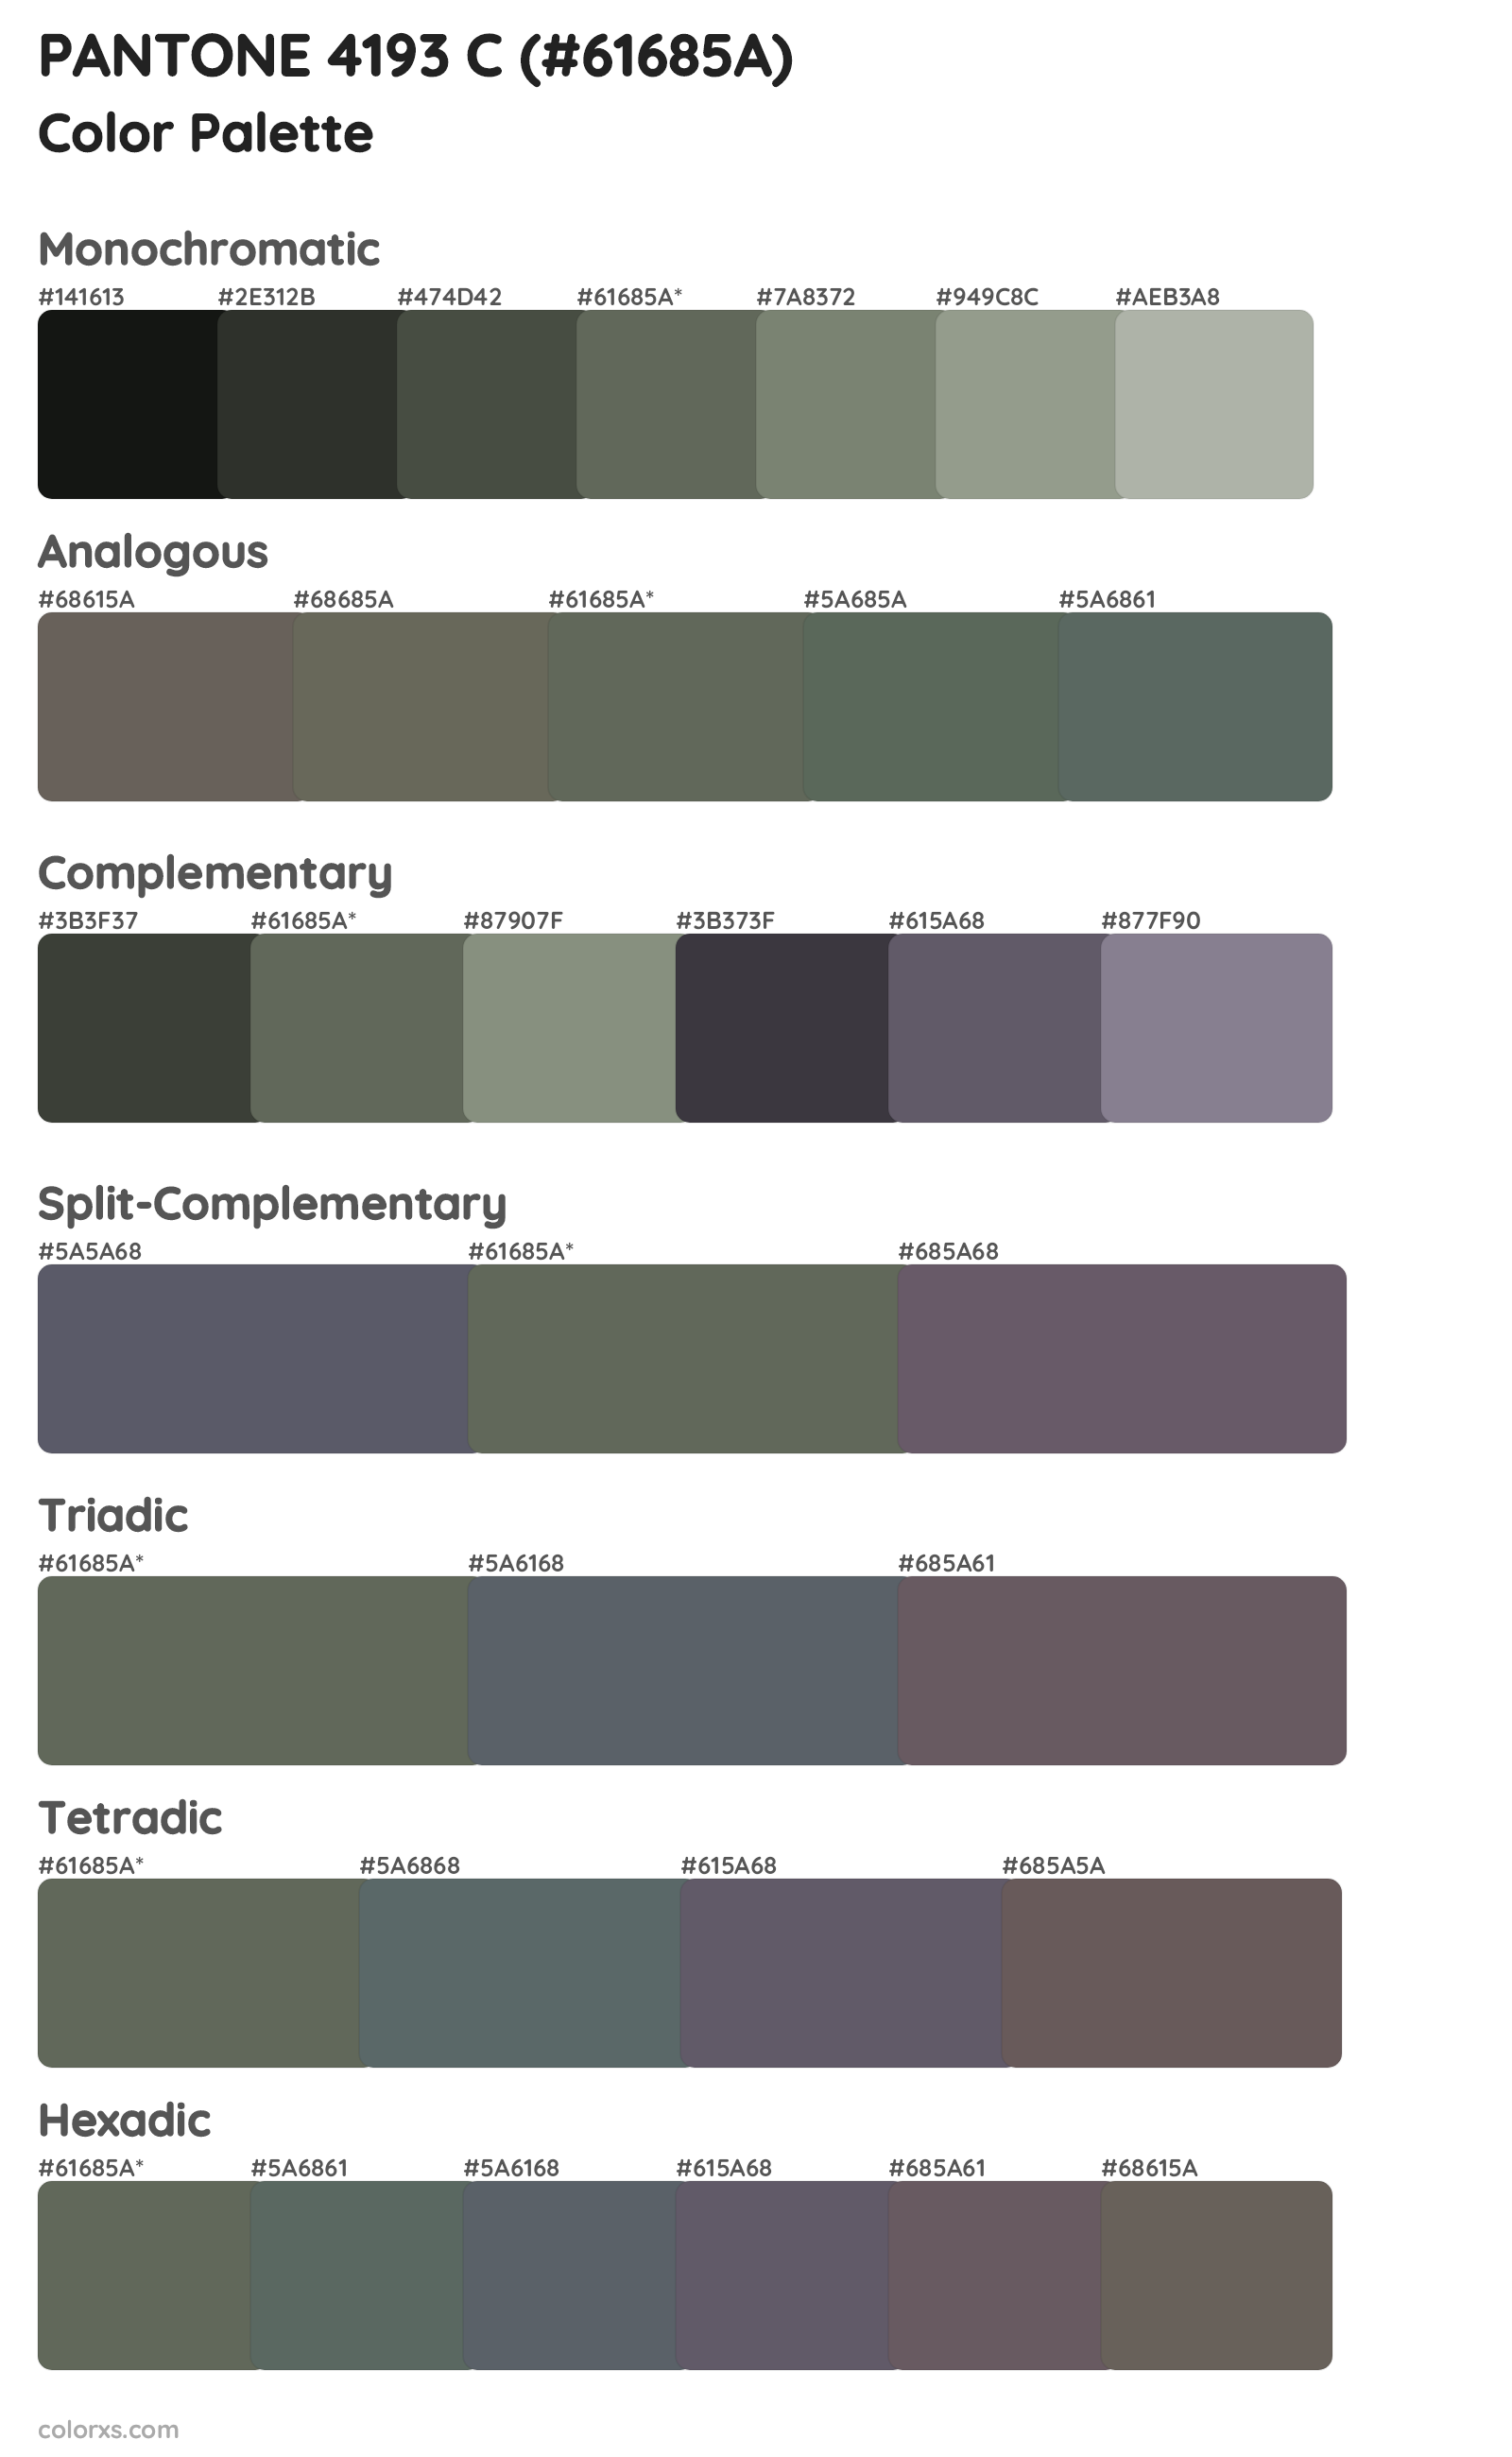 PANTONE 4193 C Color Scheme Palettes